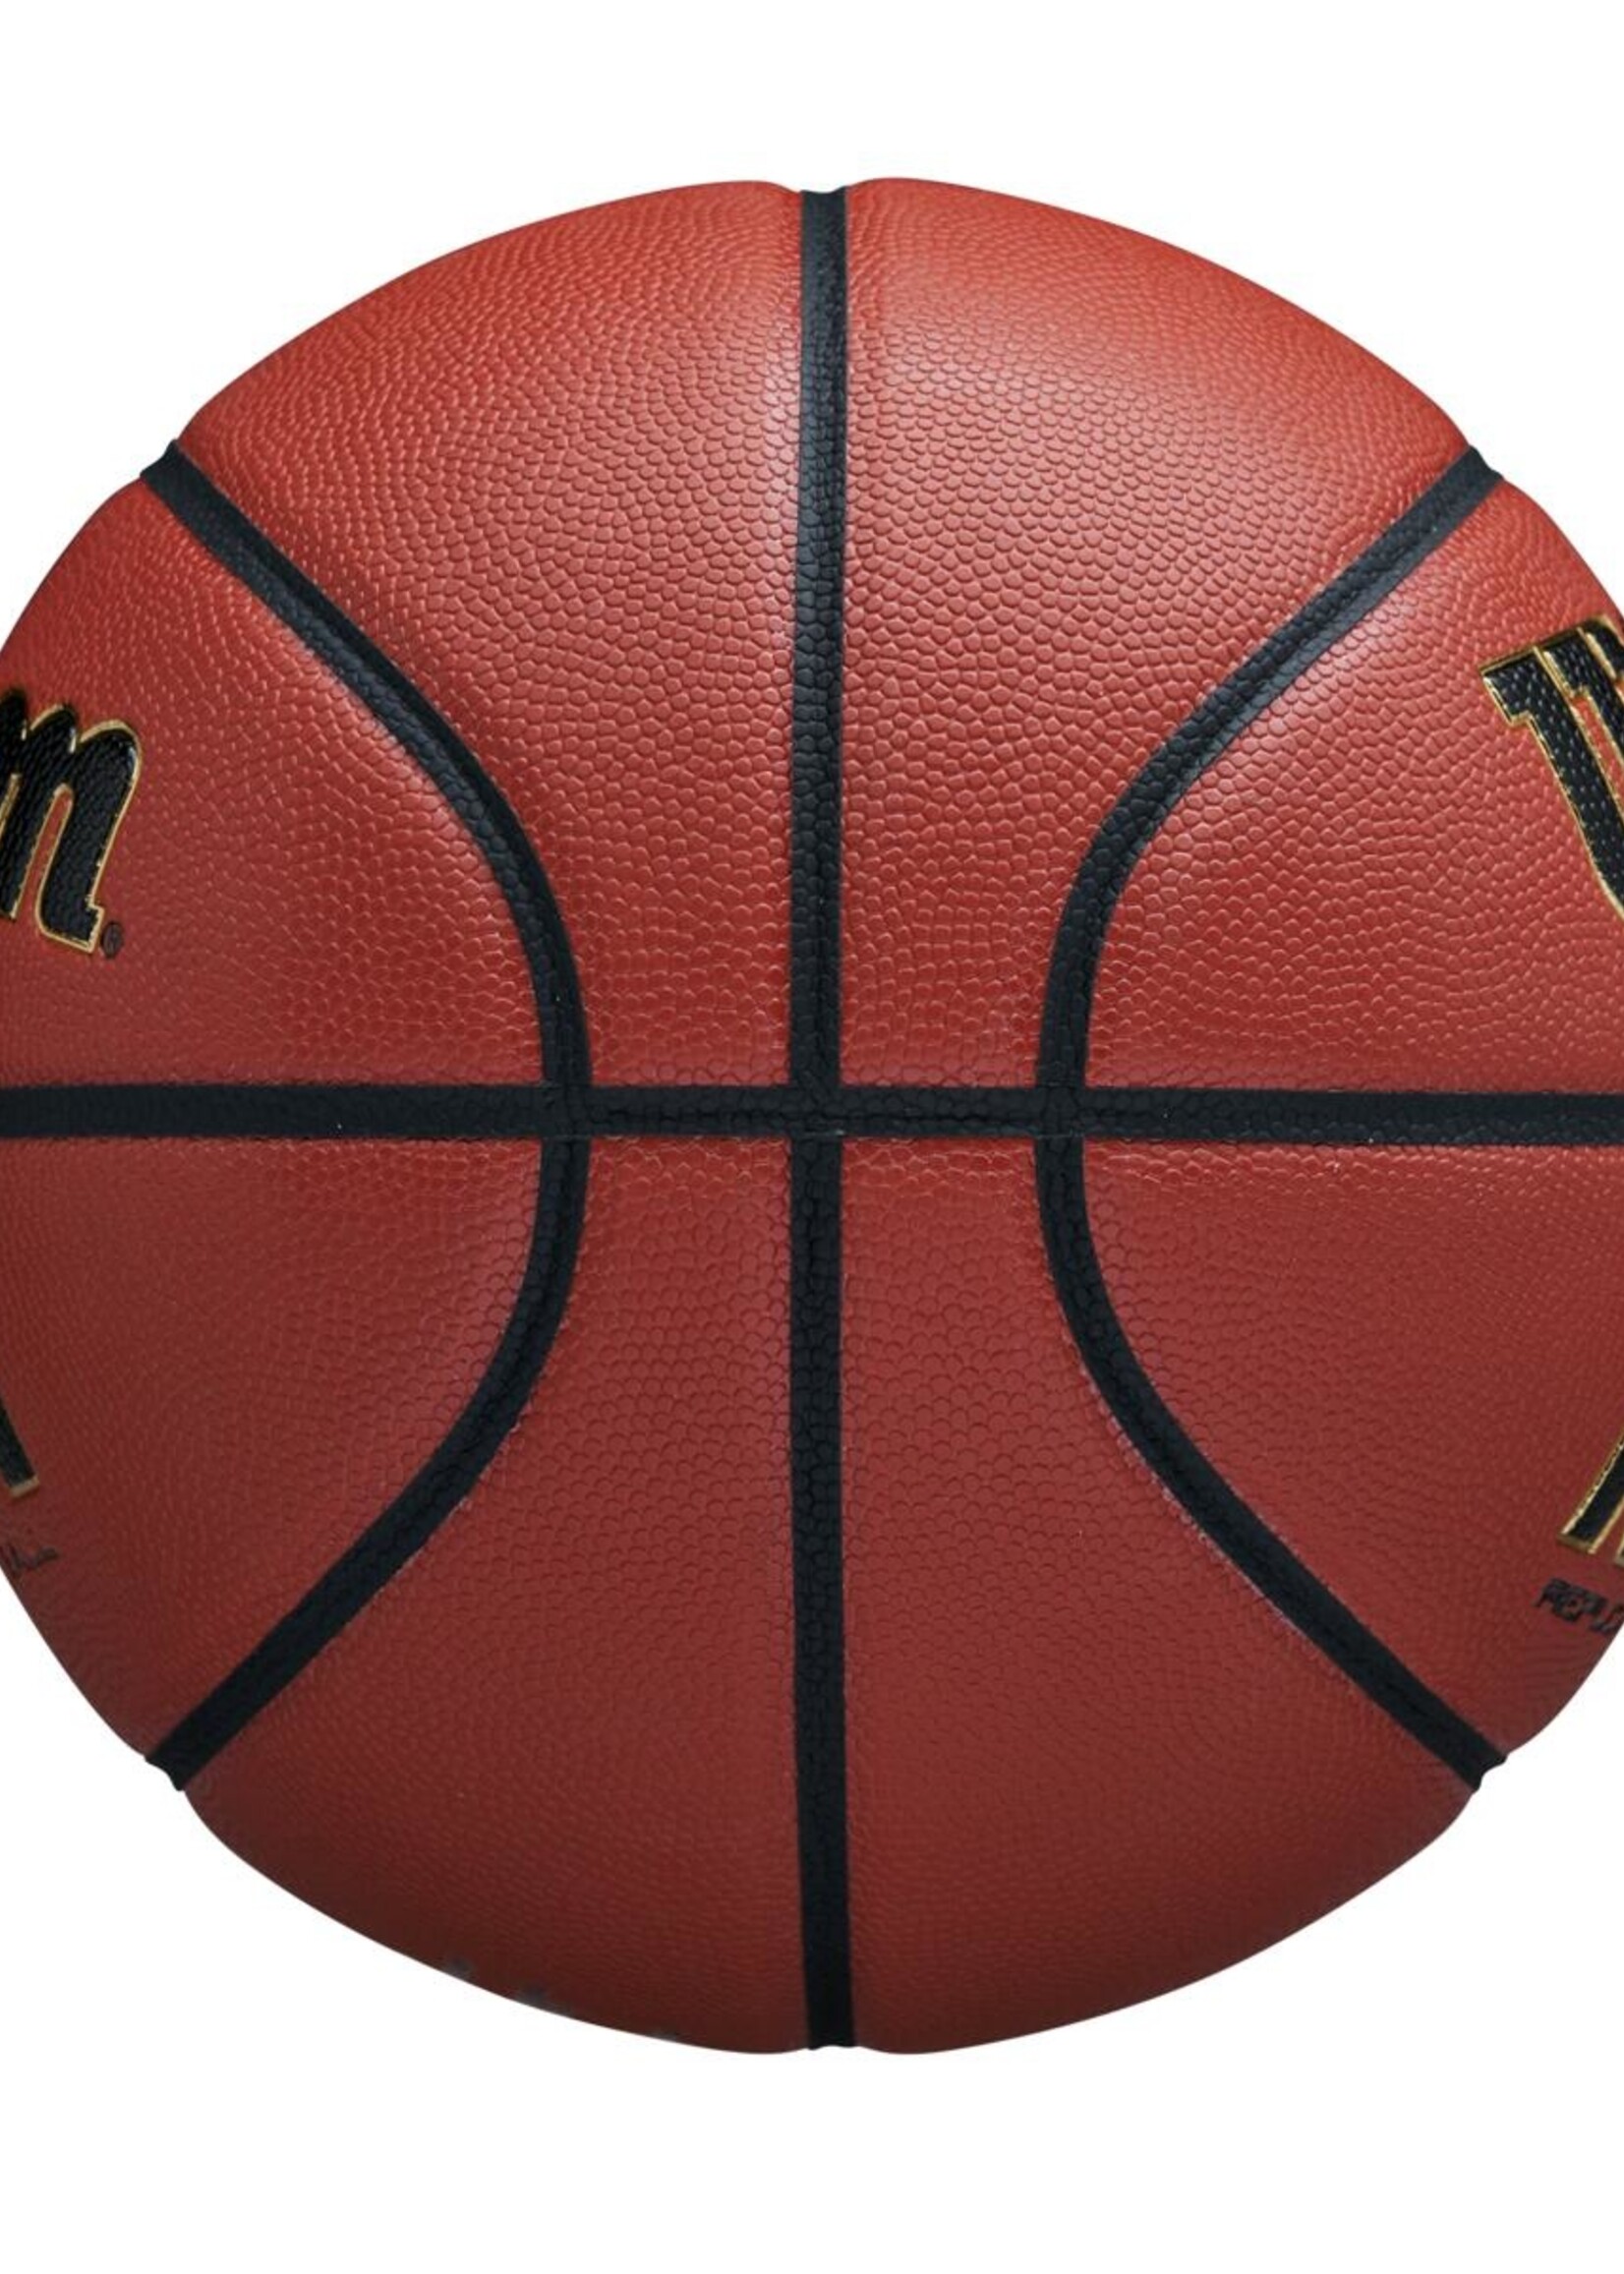 Wilson Wilson NCAA Replica Indoor / Outdoor Basketbal (7)